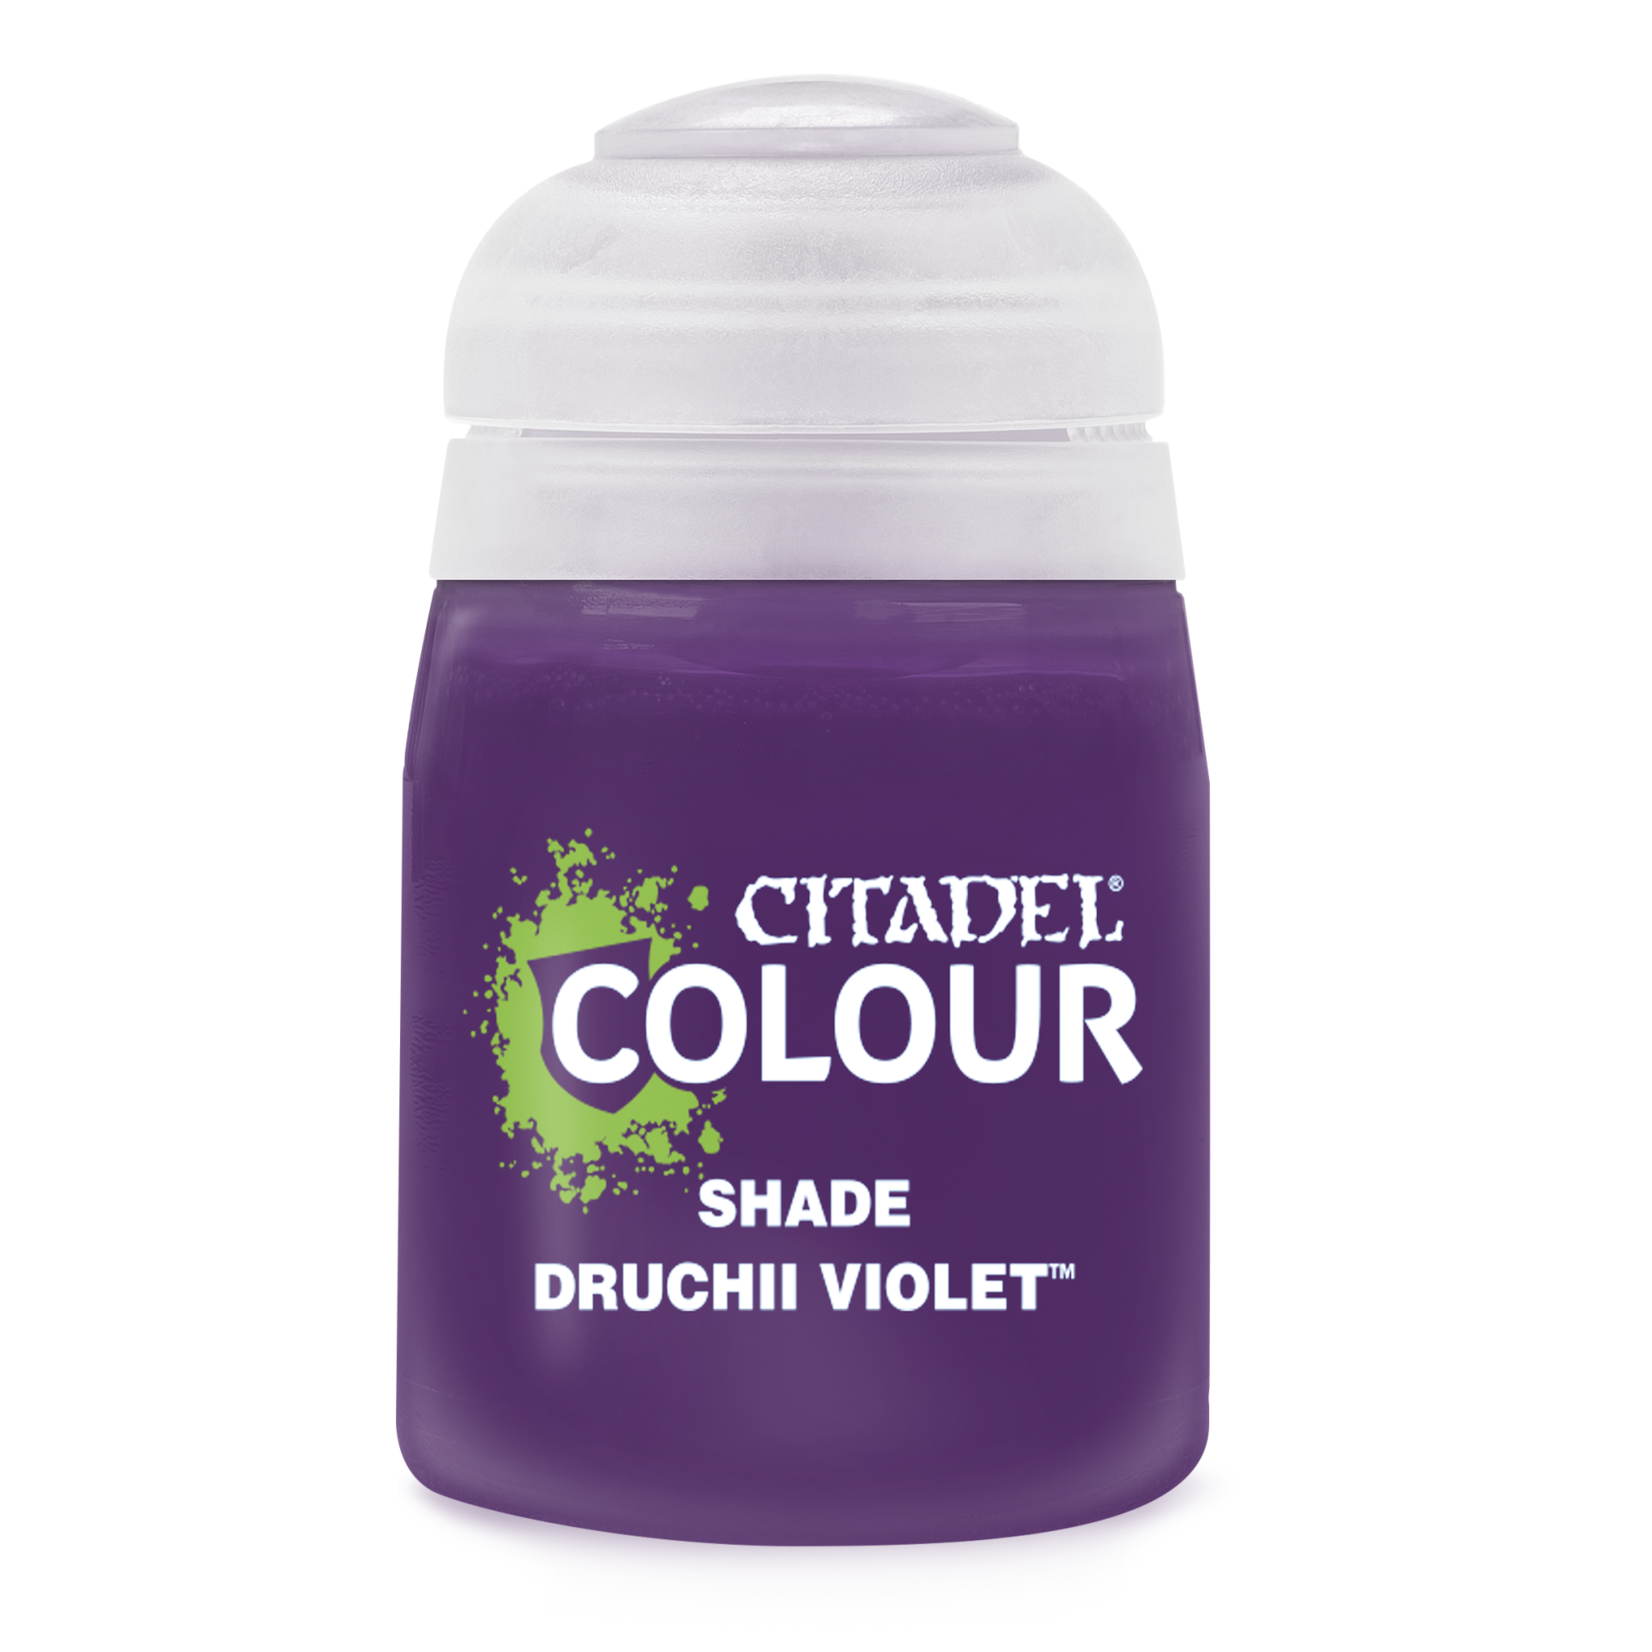 Citadel Shade Druchii Violet 18ml Reformulated